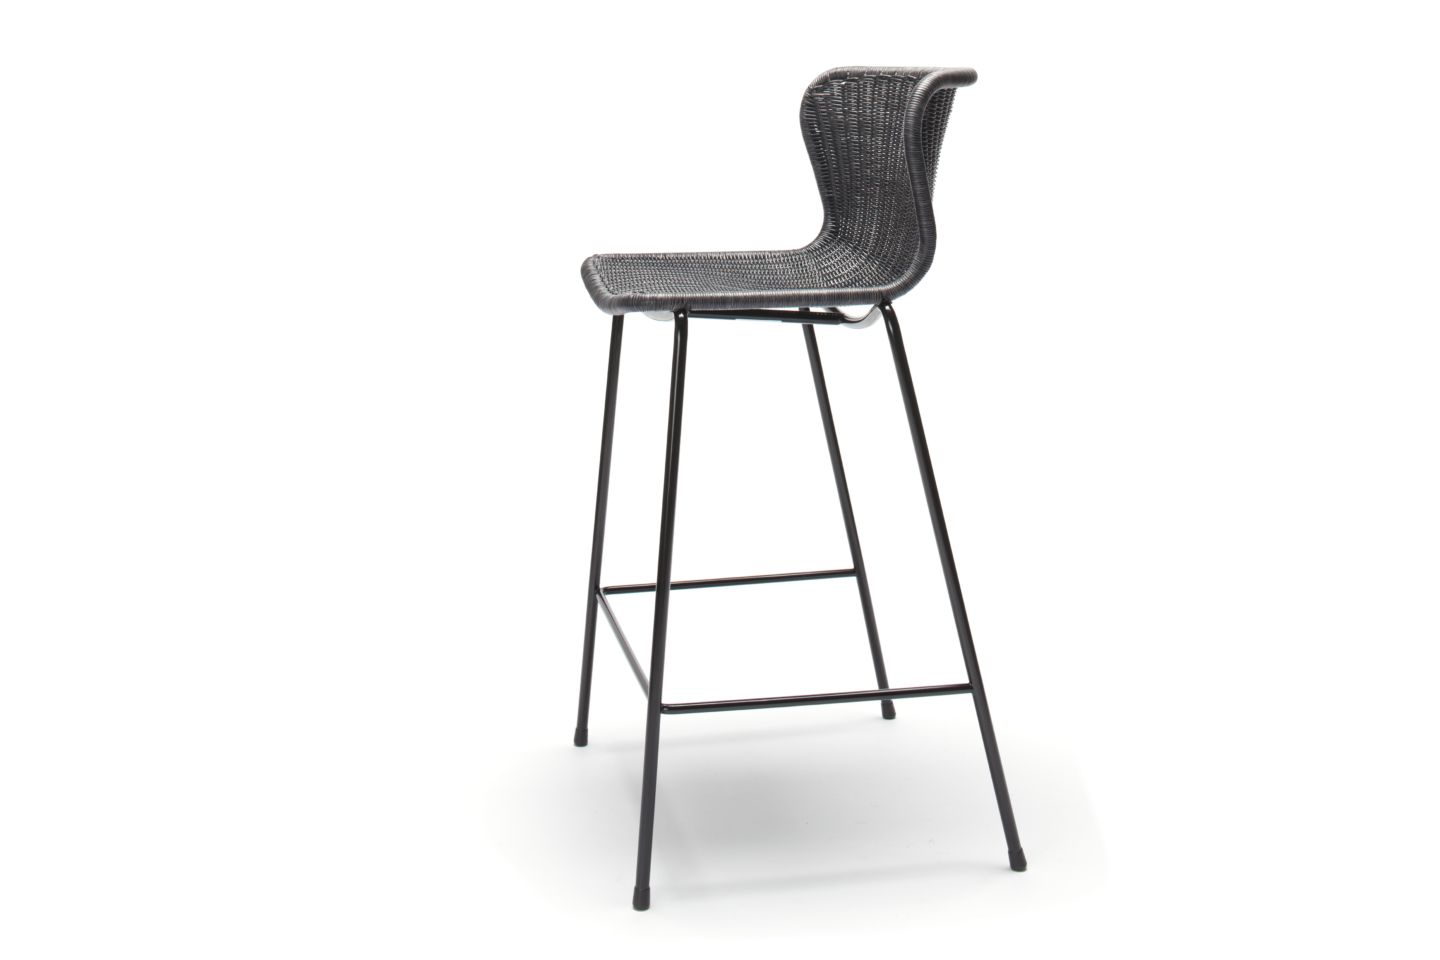 Барный стул C603 INDOOR by Feelgood Designs